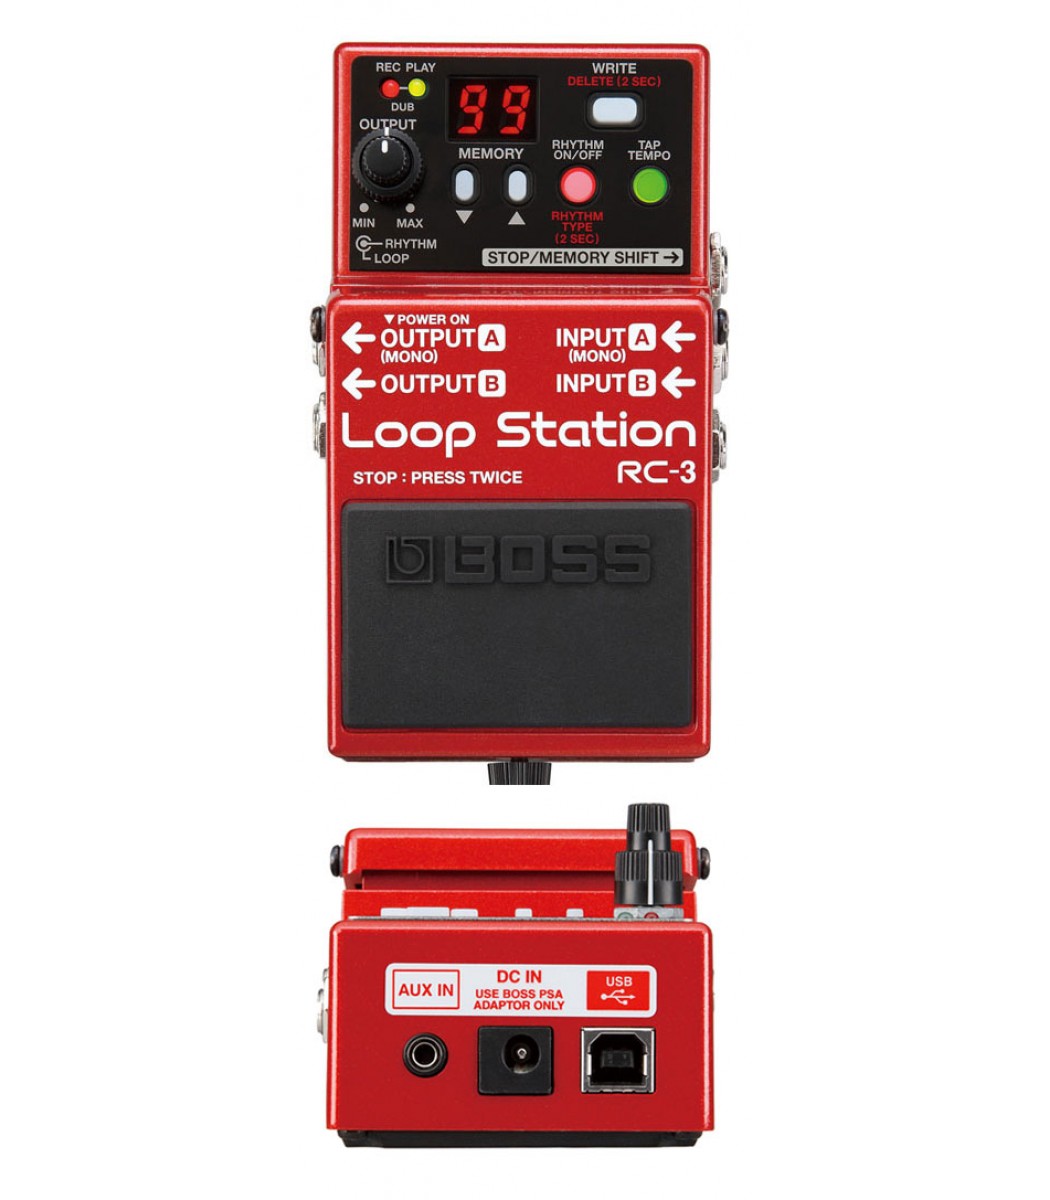 Boss loop station rc-2 manual